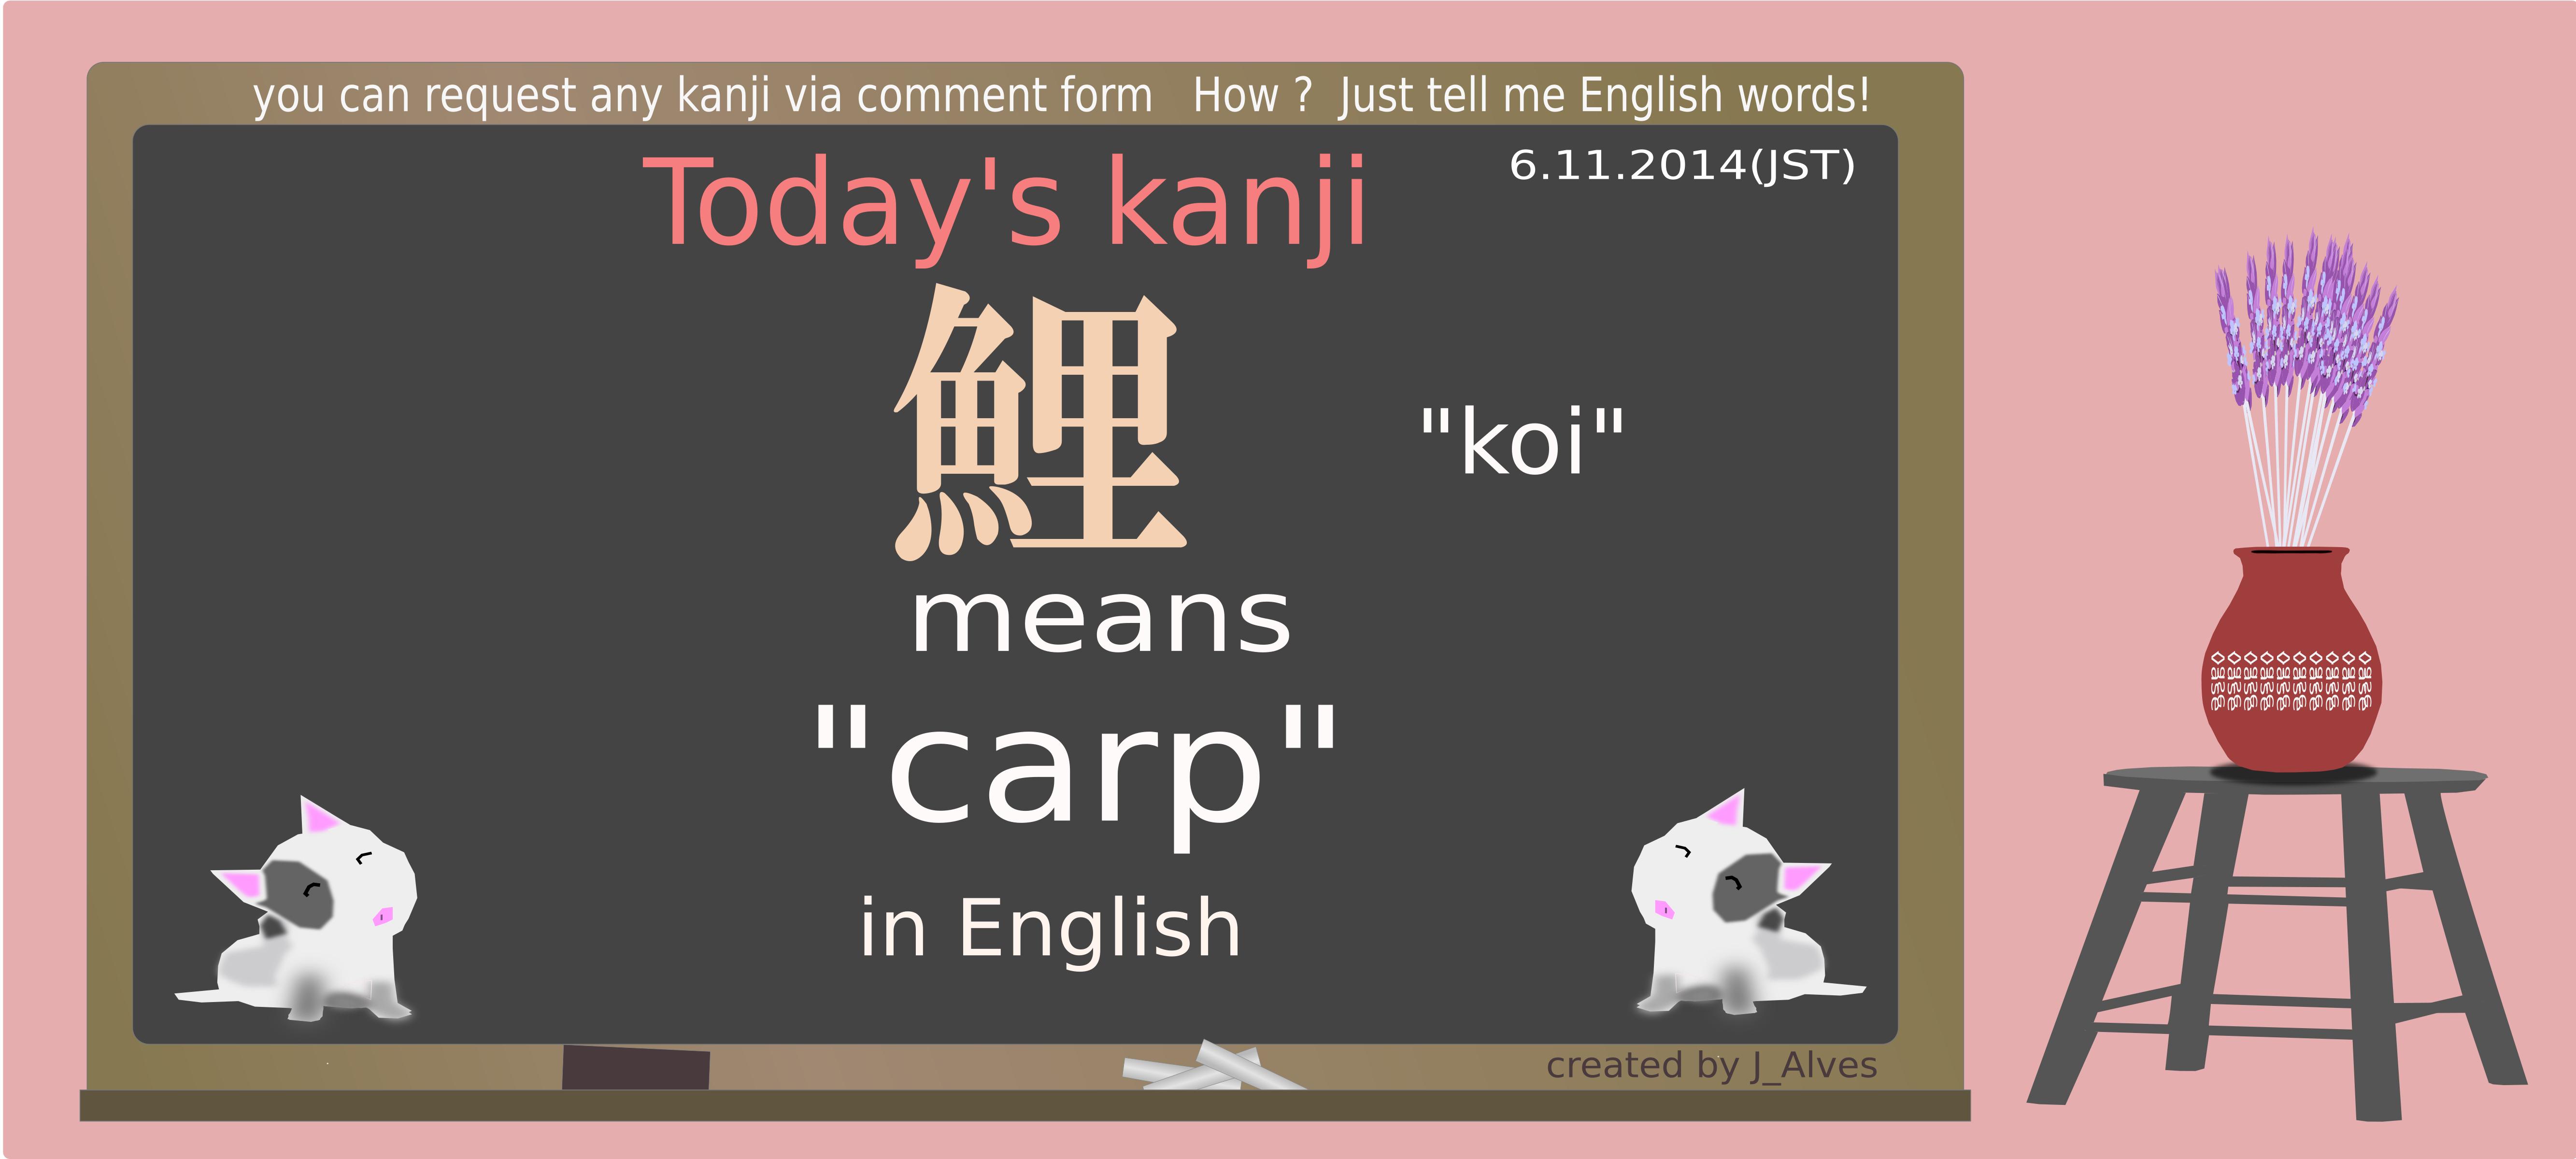 today's kanji-74-koi png